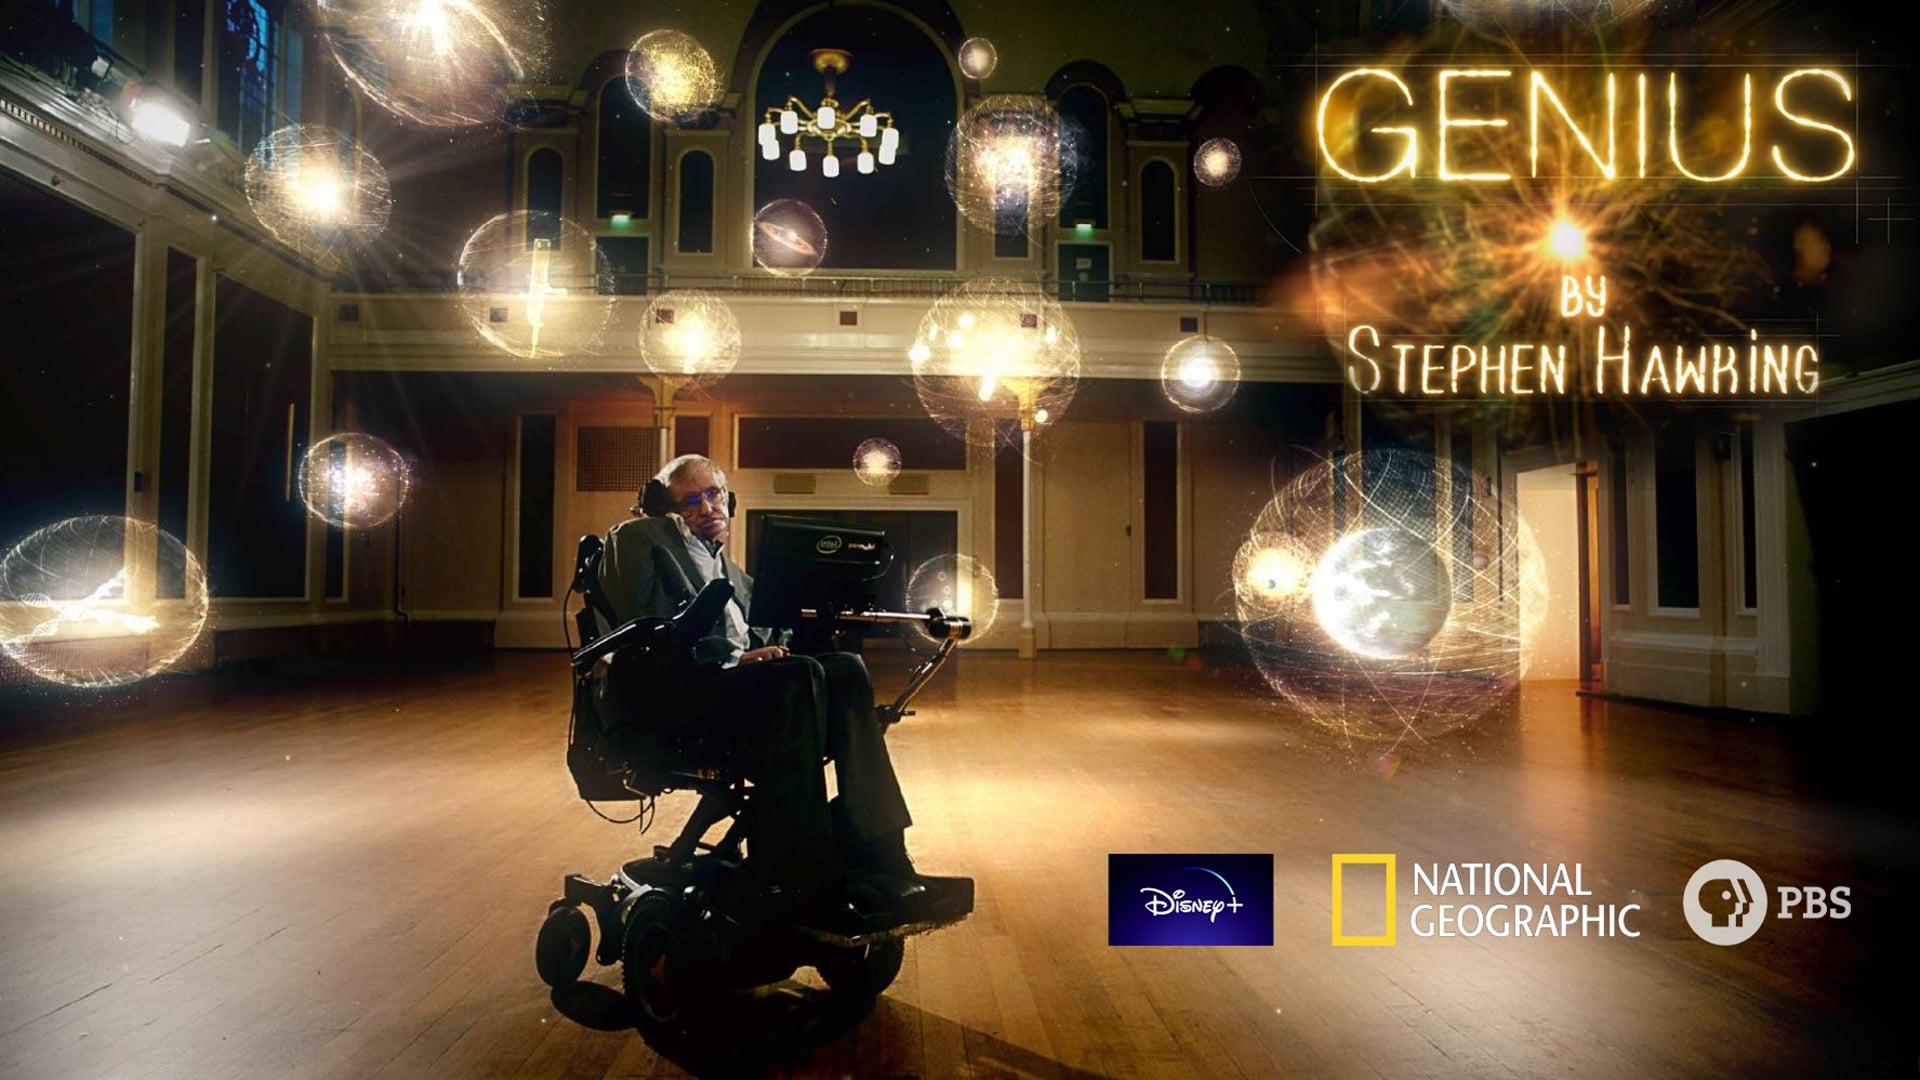 "Genius by Stephen Hawking" trailer